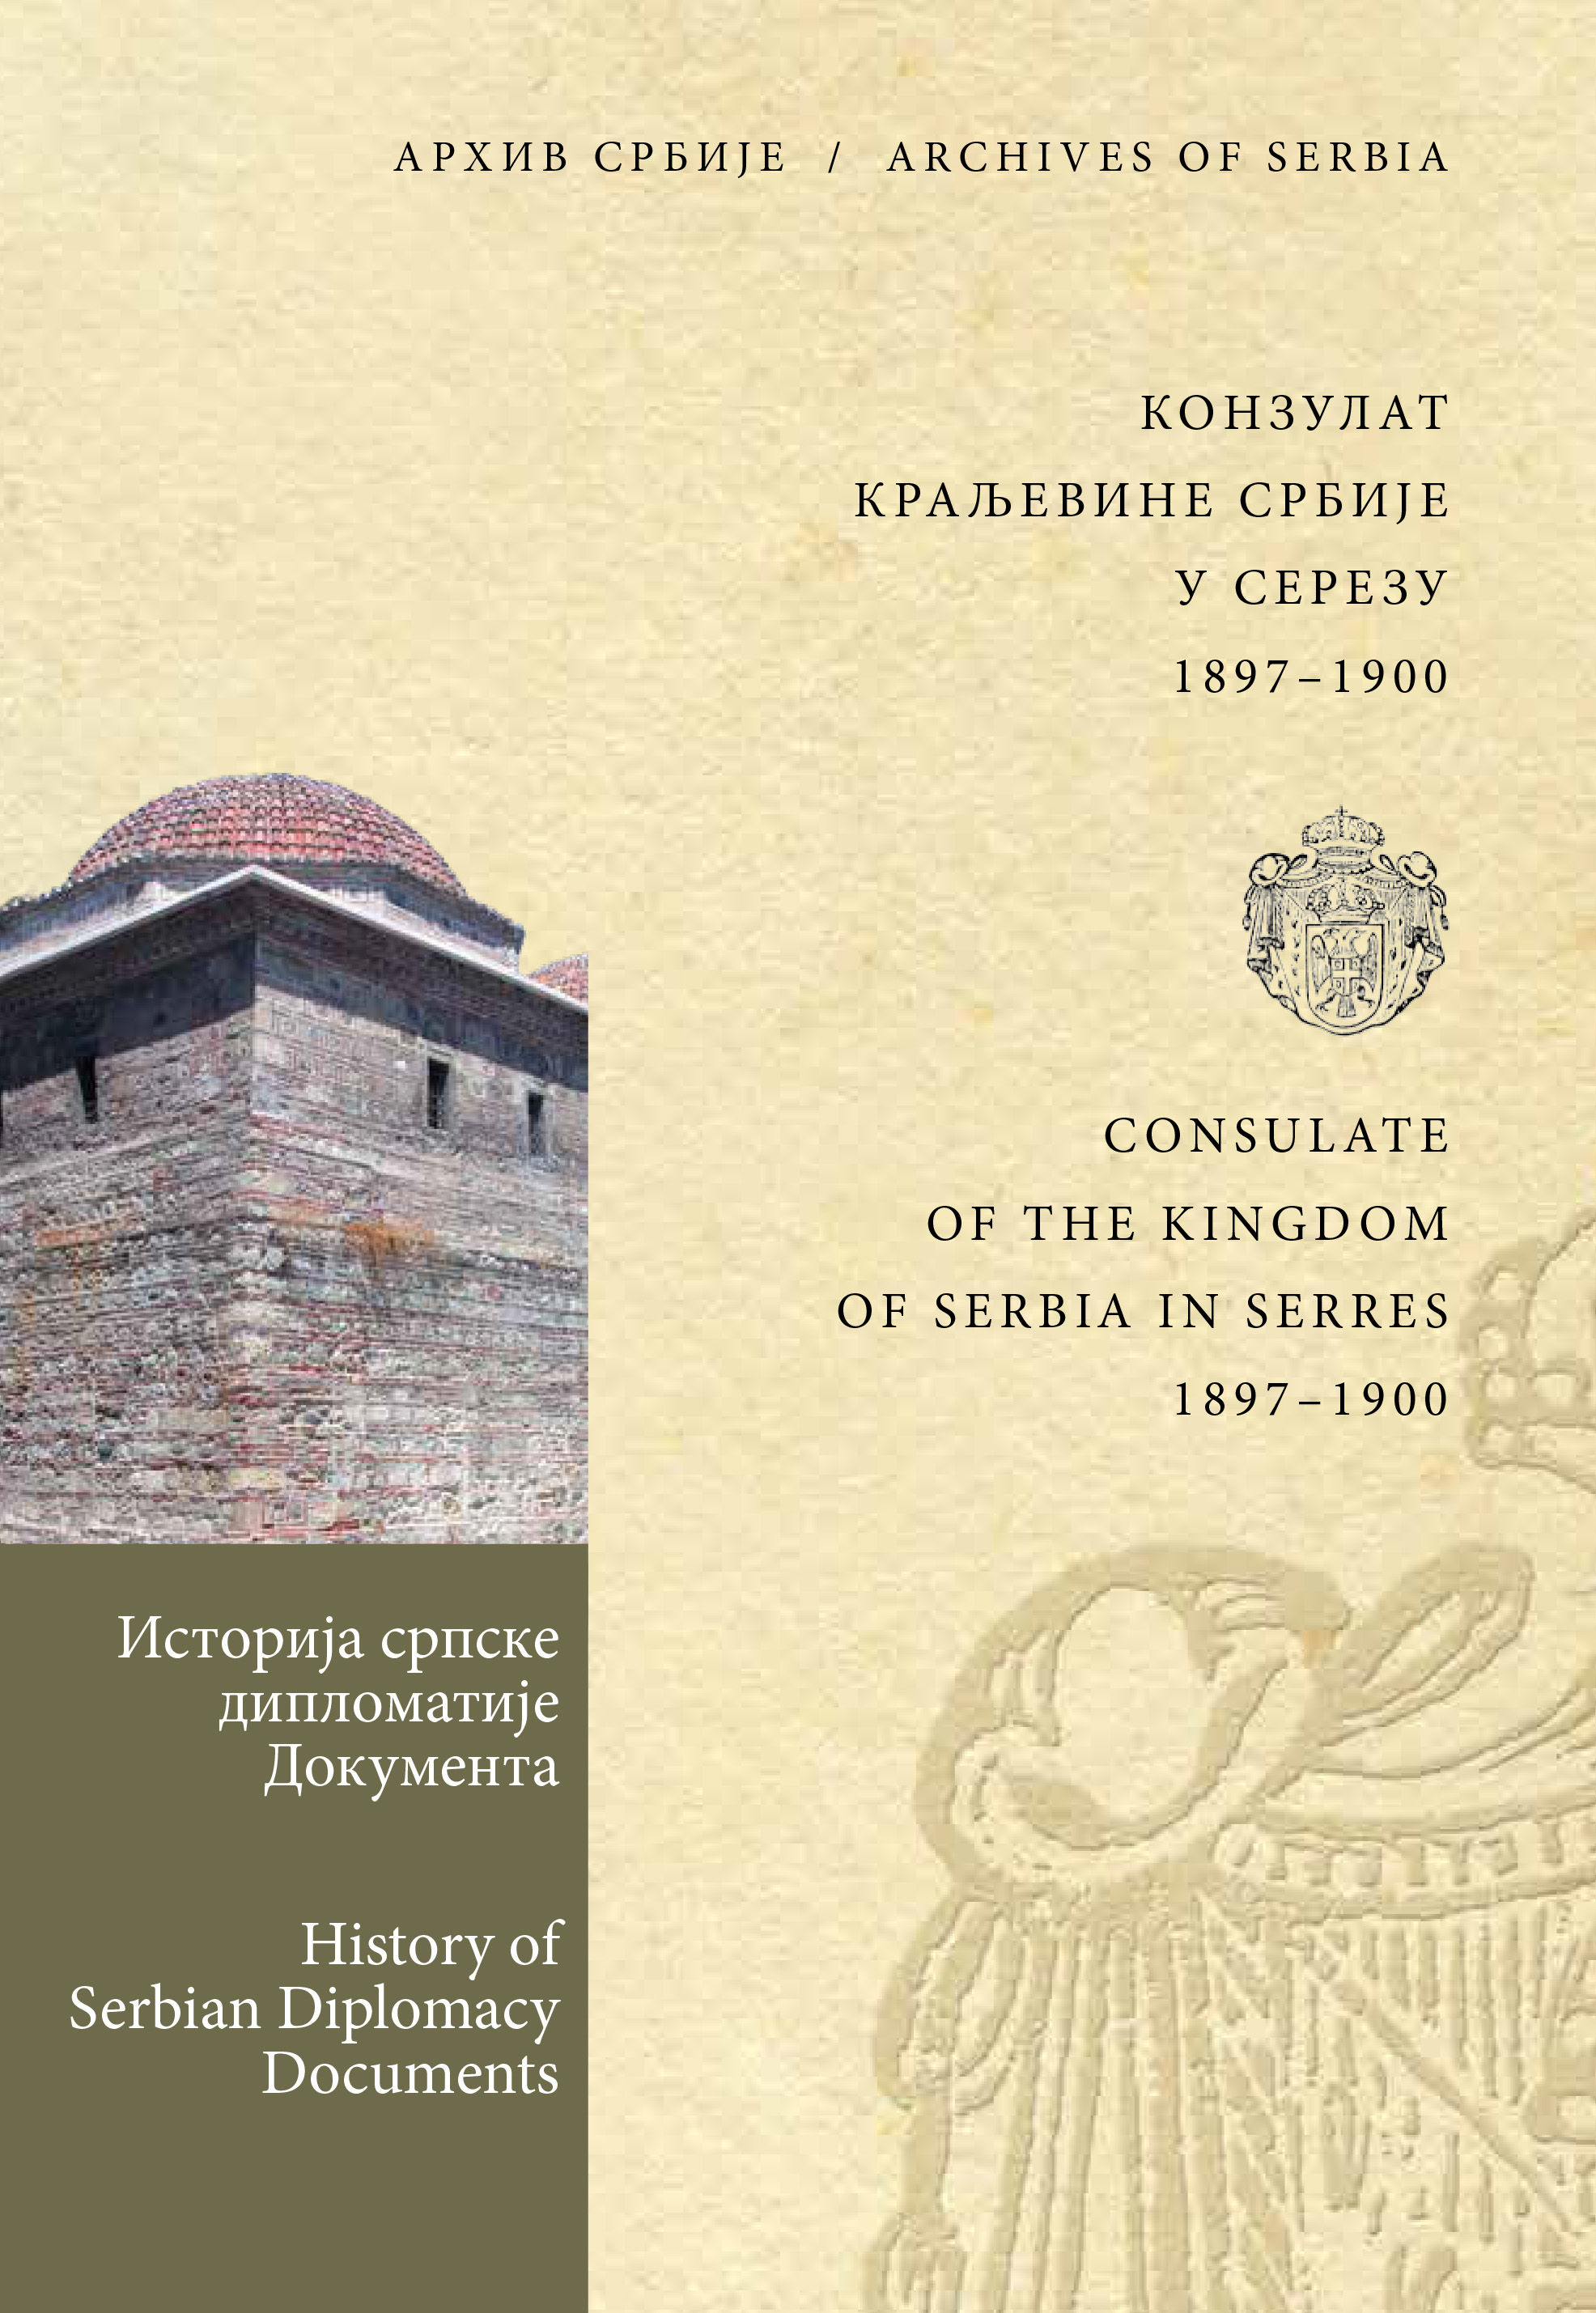 Конзулат Краљевине Србије у Серезу 1897–1900